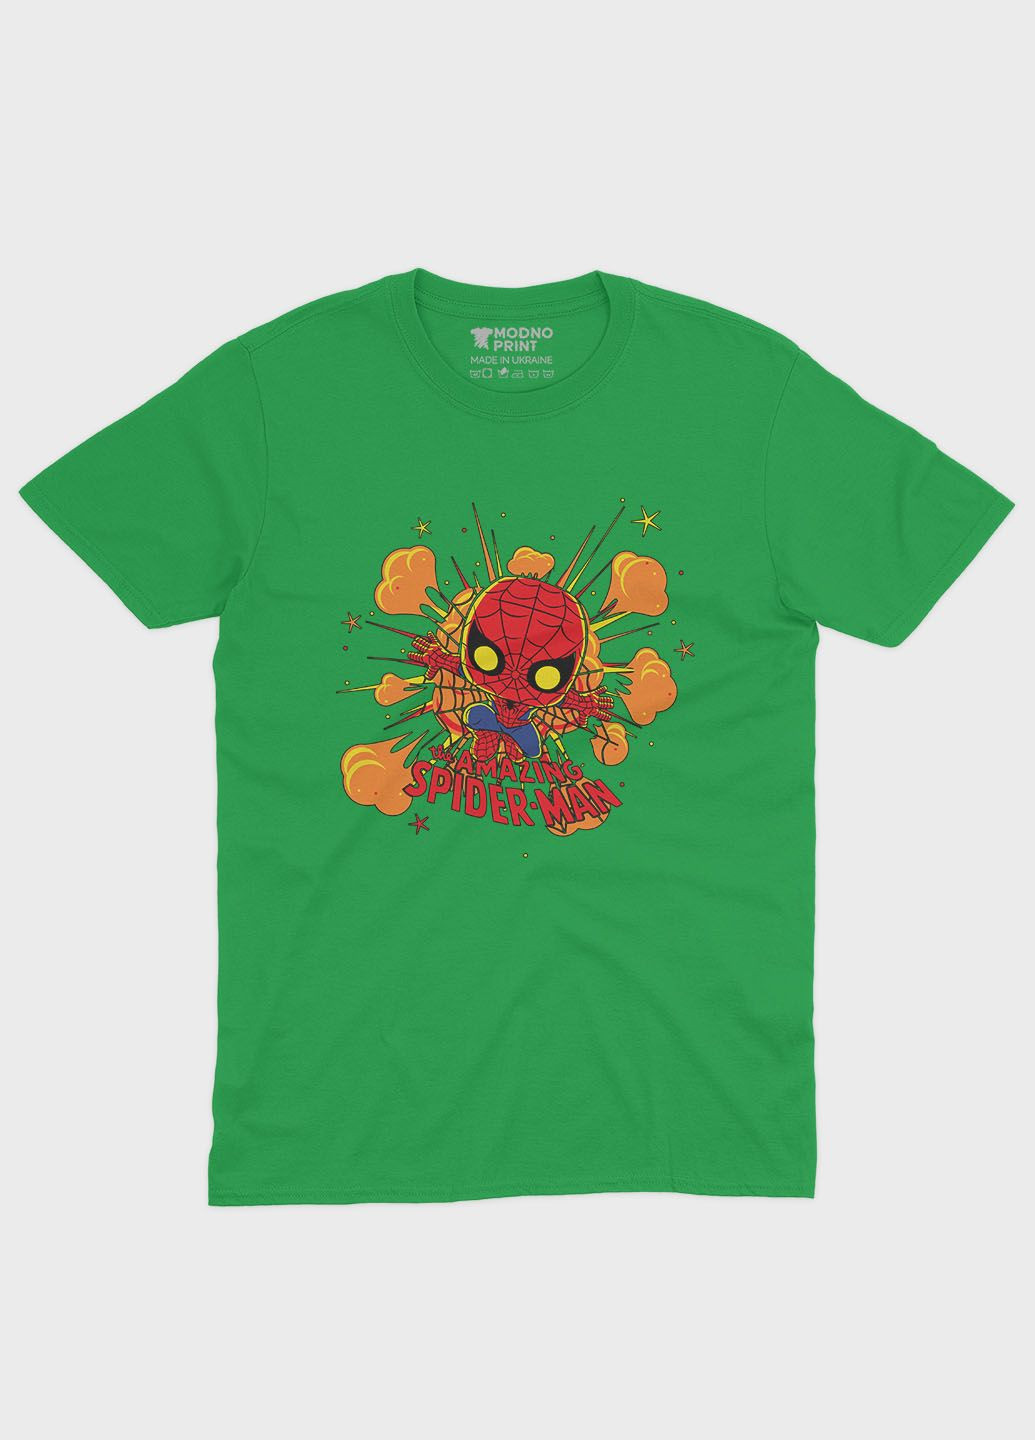 Зеленая демисезонная футболка для девочки с принтом супергероя - человек-паук (ts001-1-keg-006-014-056-g) Modno